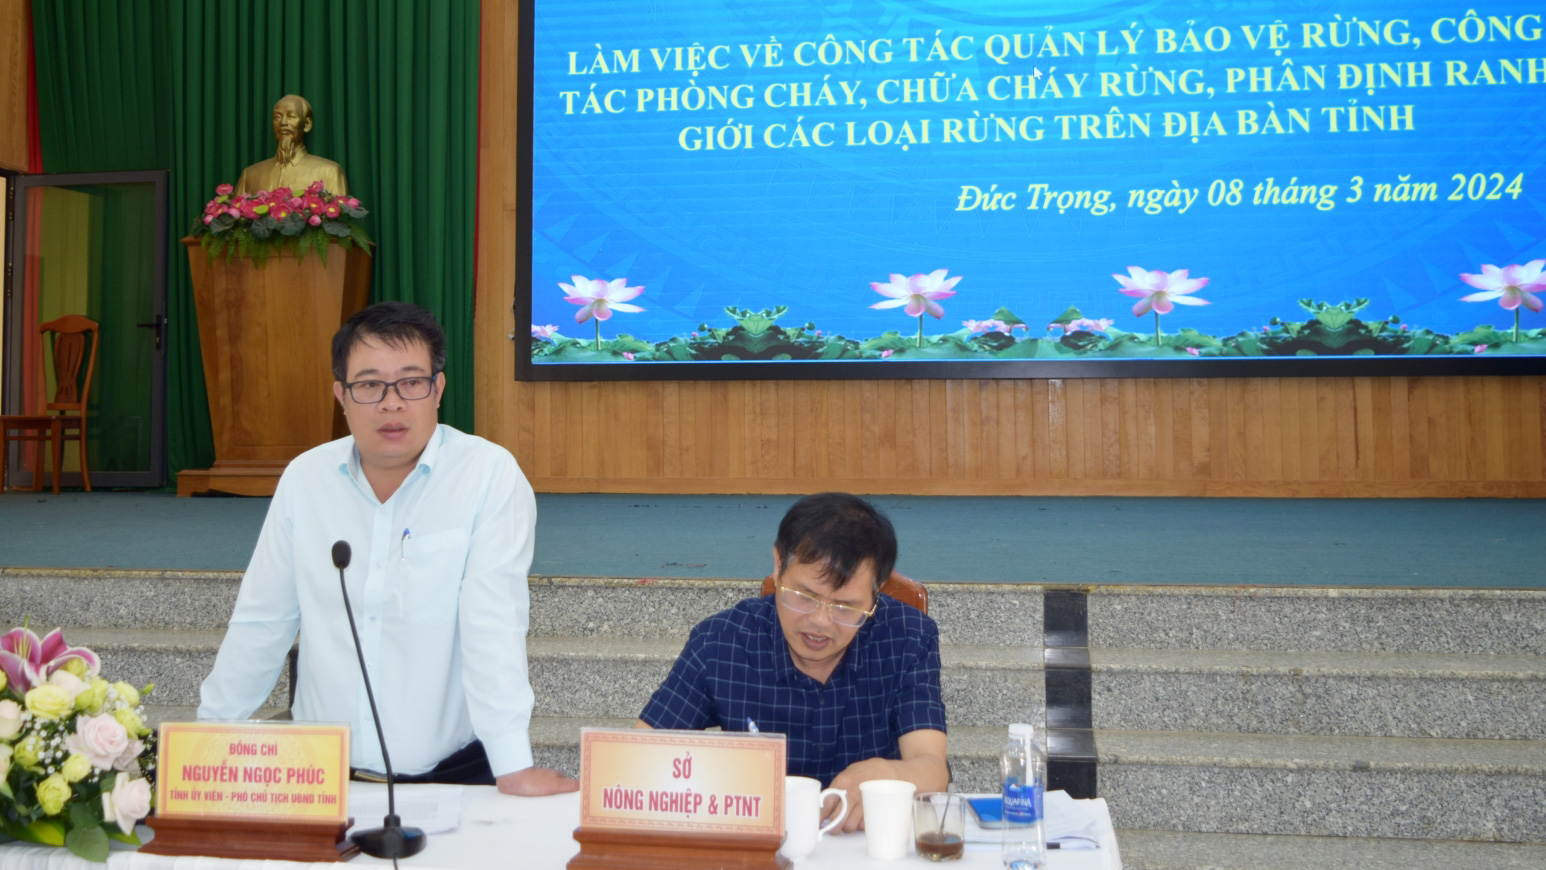 Đồng chí Nguyễn Ngọc Phúc - Phó Chủ tịch UBND tỉnh, phát biểu chỉ đạo